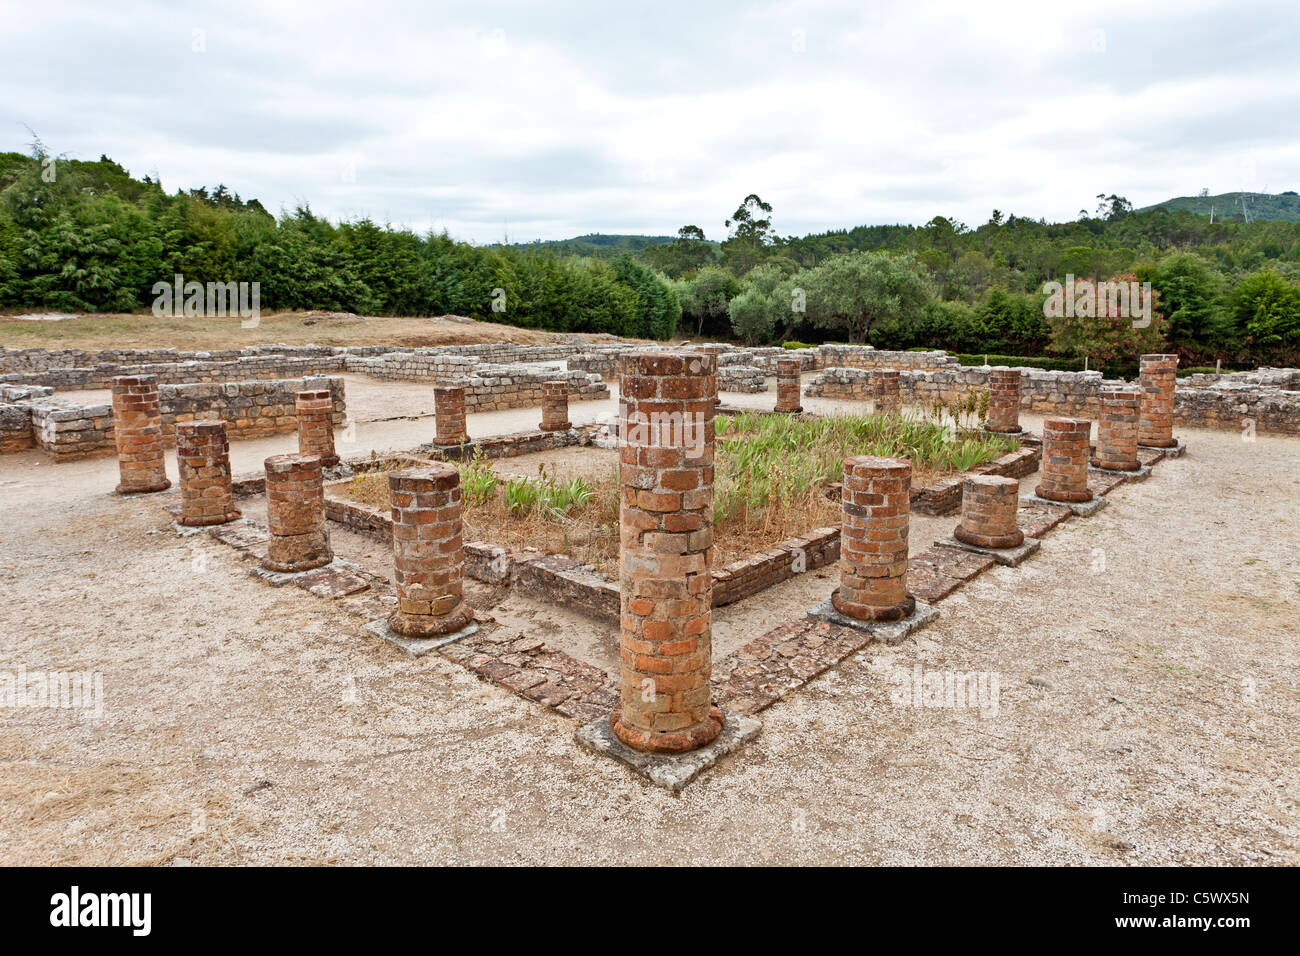 La città romana di Conimbriga, le meglio conservate rovine romane in Portogallo. Foto Stock